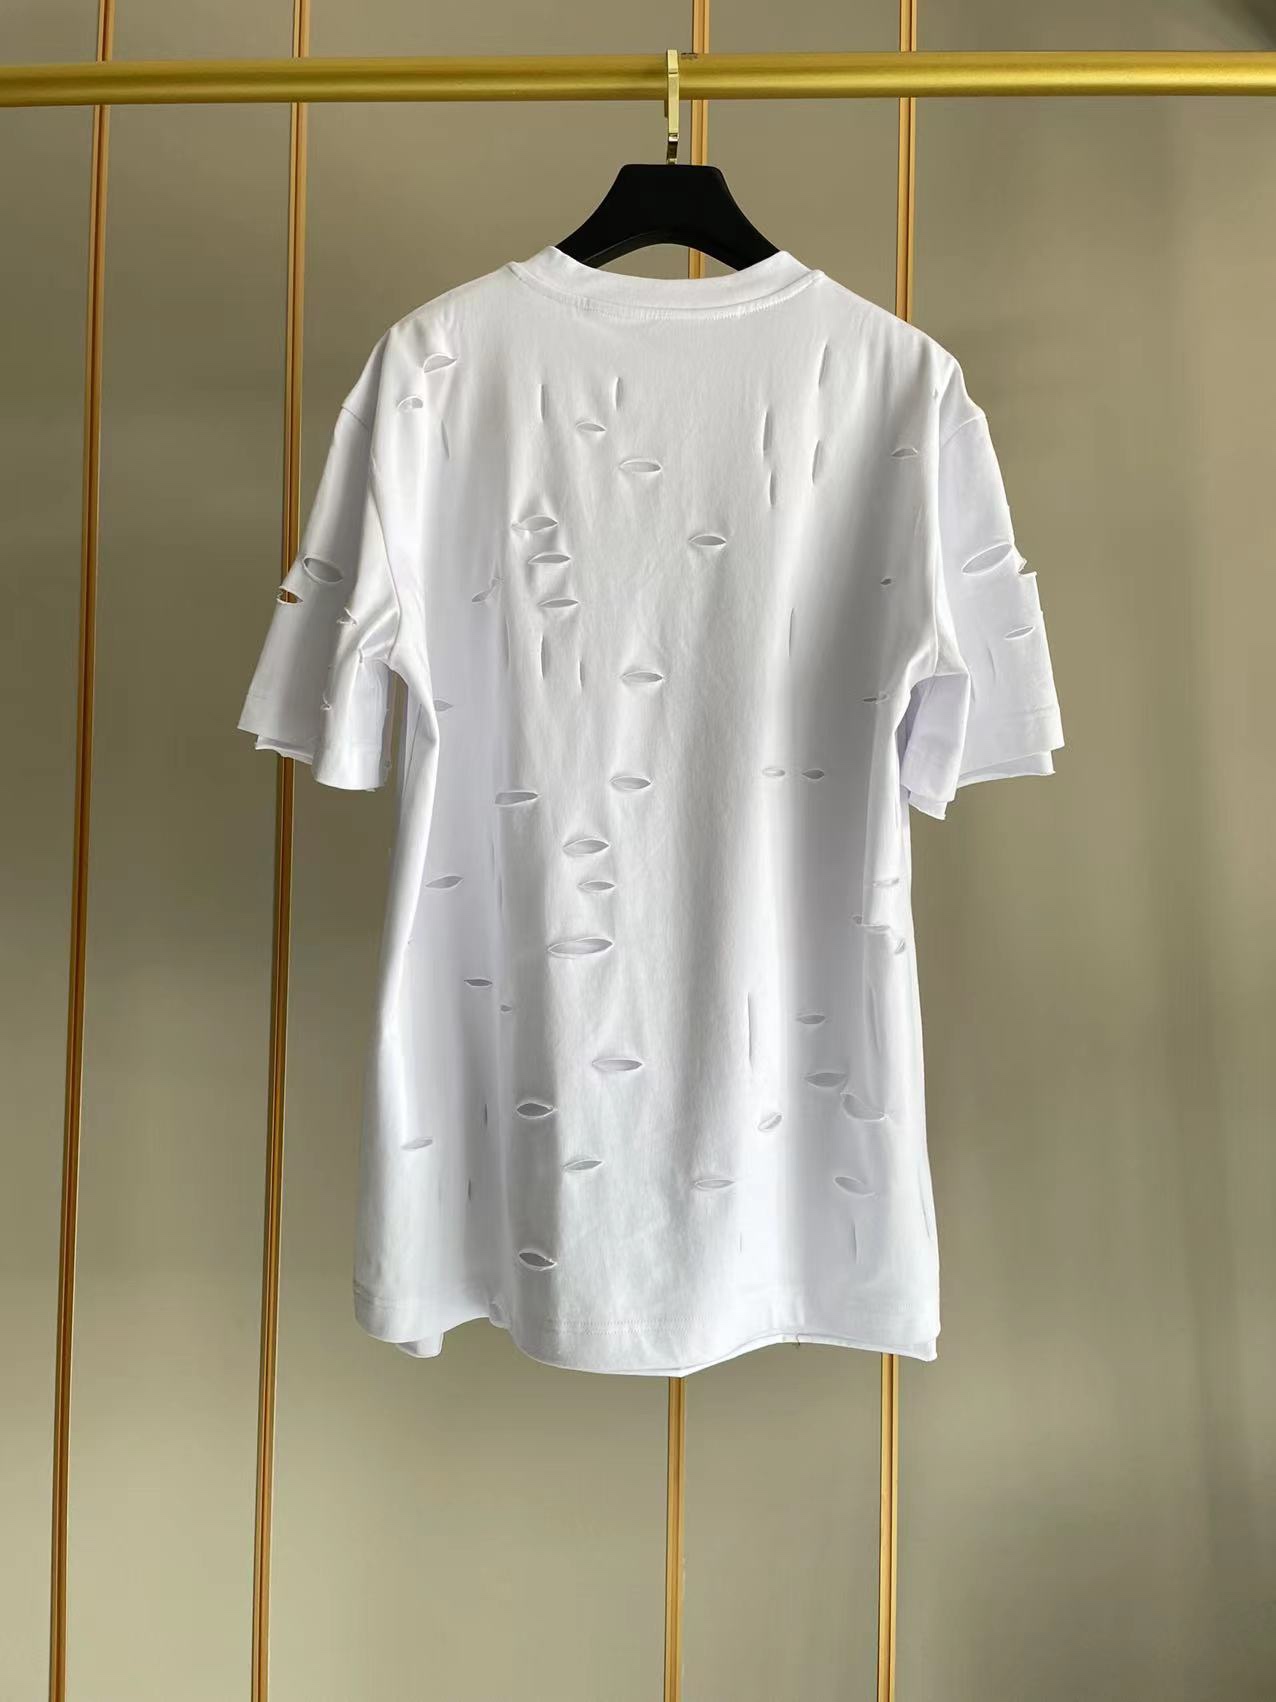 ジバンシィトップスコピ激安通販 純綿 Tシャツ 半袖 シンプル ダメージ加工のデザイン 5色可選 ホワイト_2